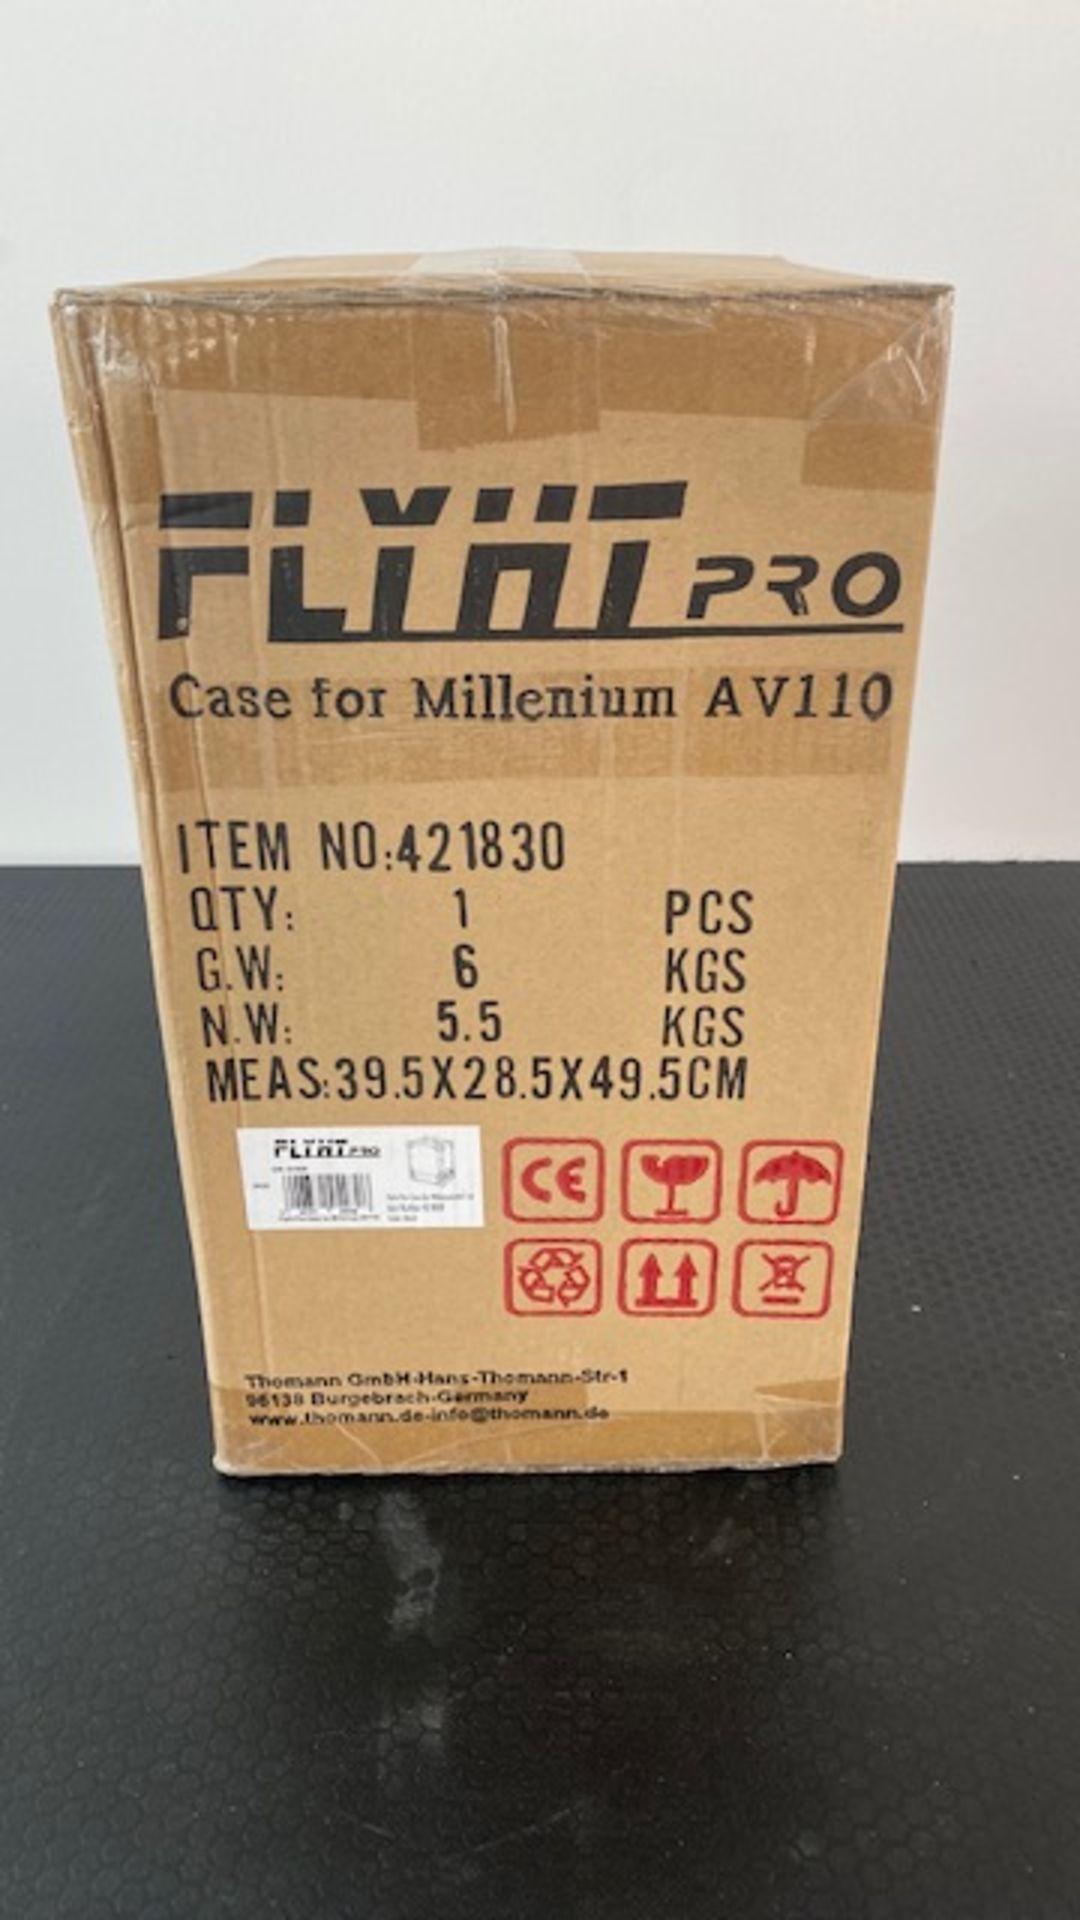 1 x FLYHT PRO Flight Case For Millenium AV110 - New / Unopened - Ref: 927 - CL581 - Location: - Image 2 of 6